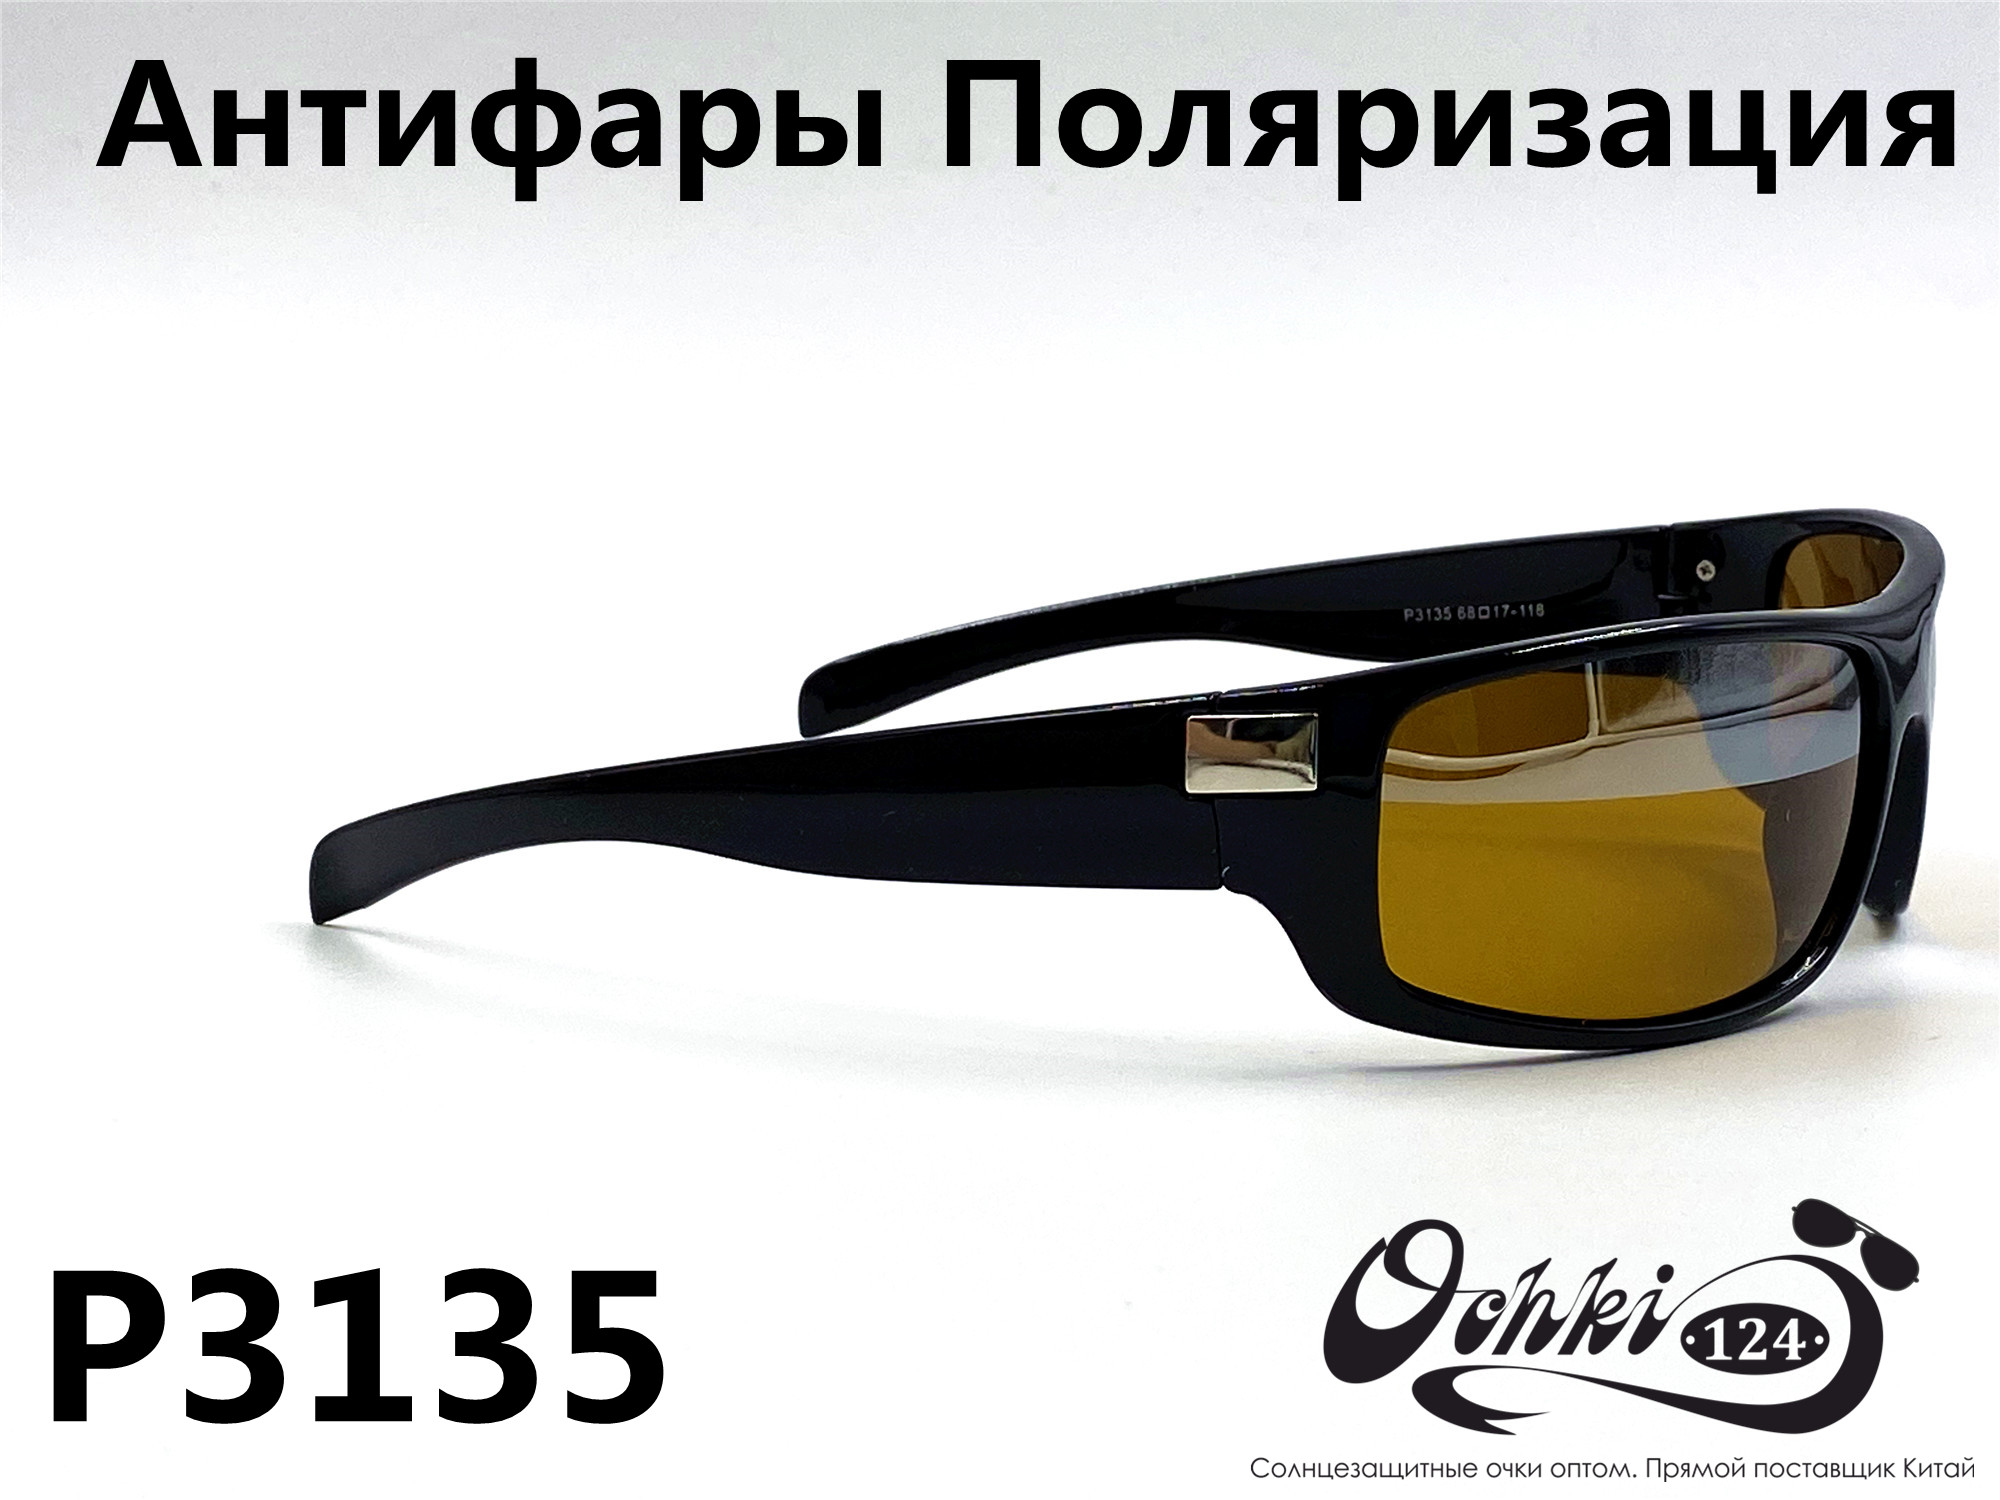  Солнцезащитные очки картинка 2022 Мужские антифары-спорт, с зеркальной полосой, Желтый Polarized P3135-1 